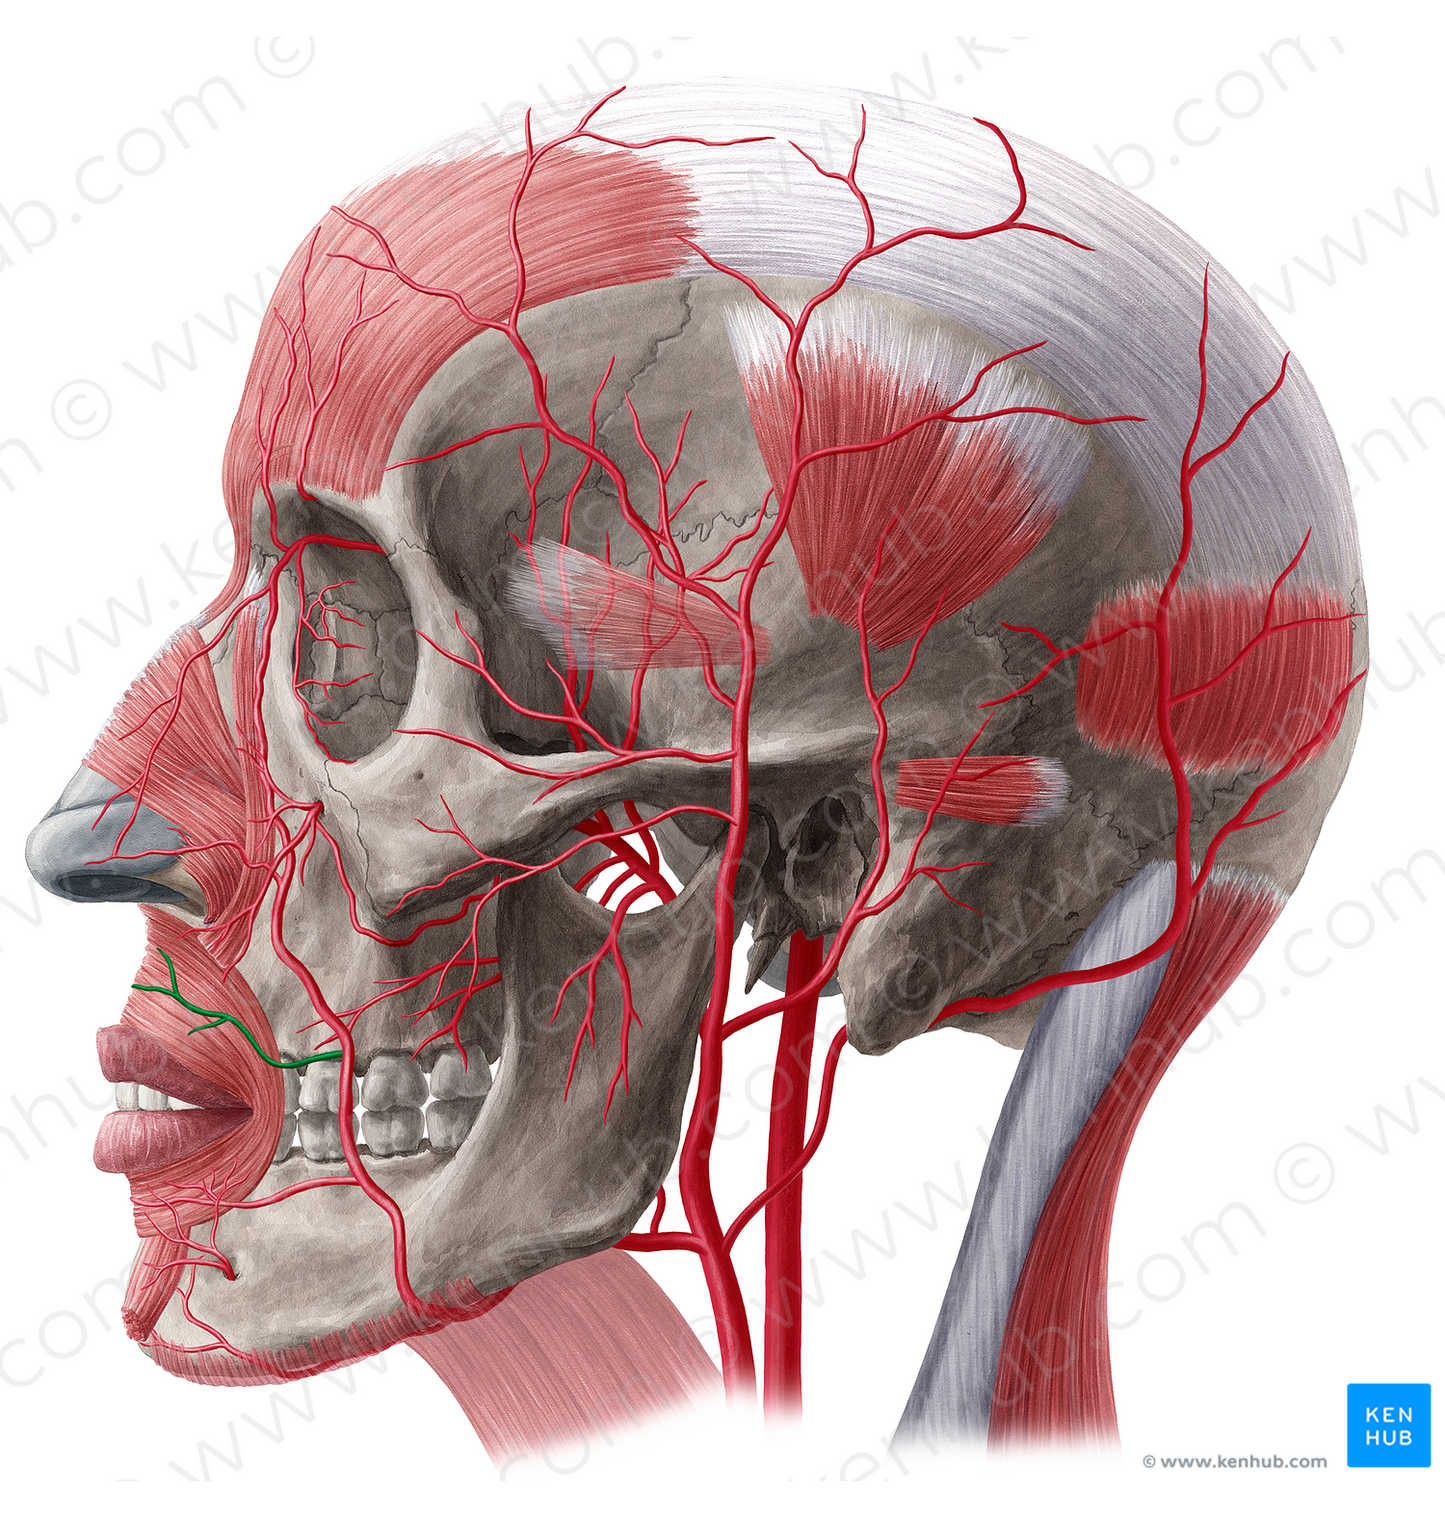 Superior labial artery (#1469)